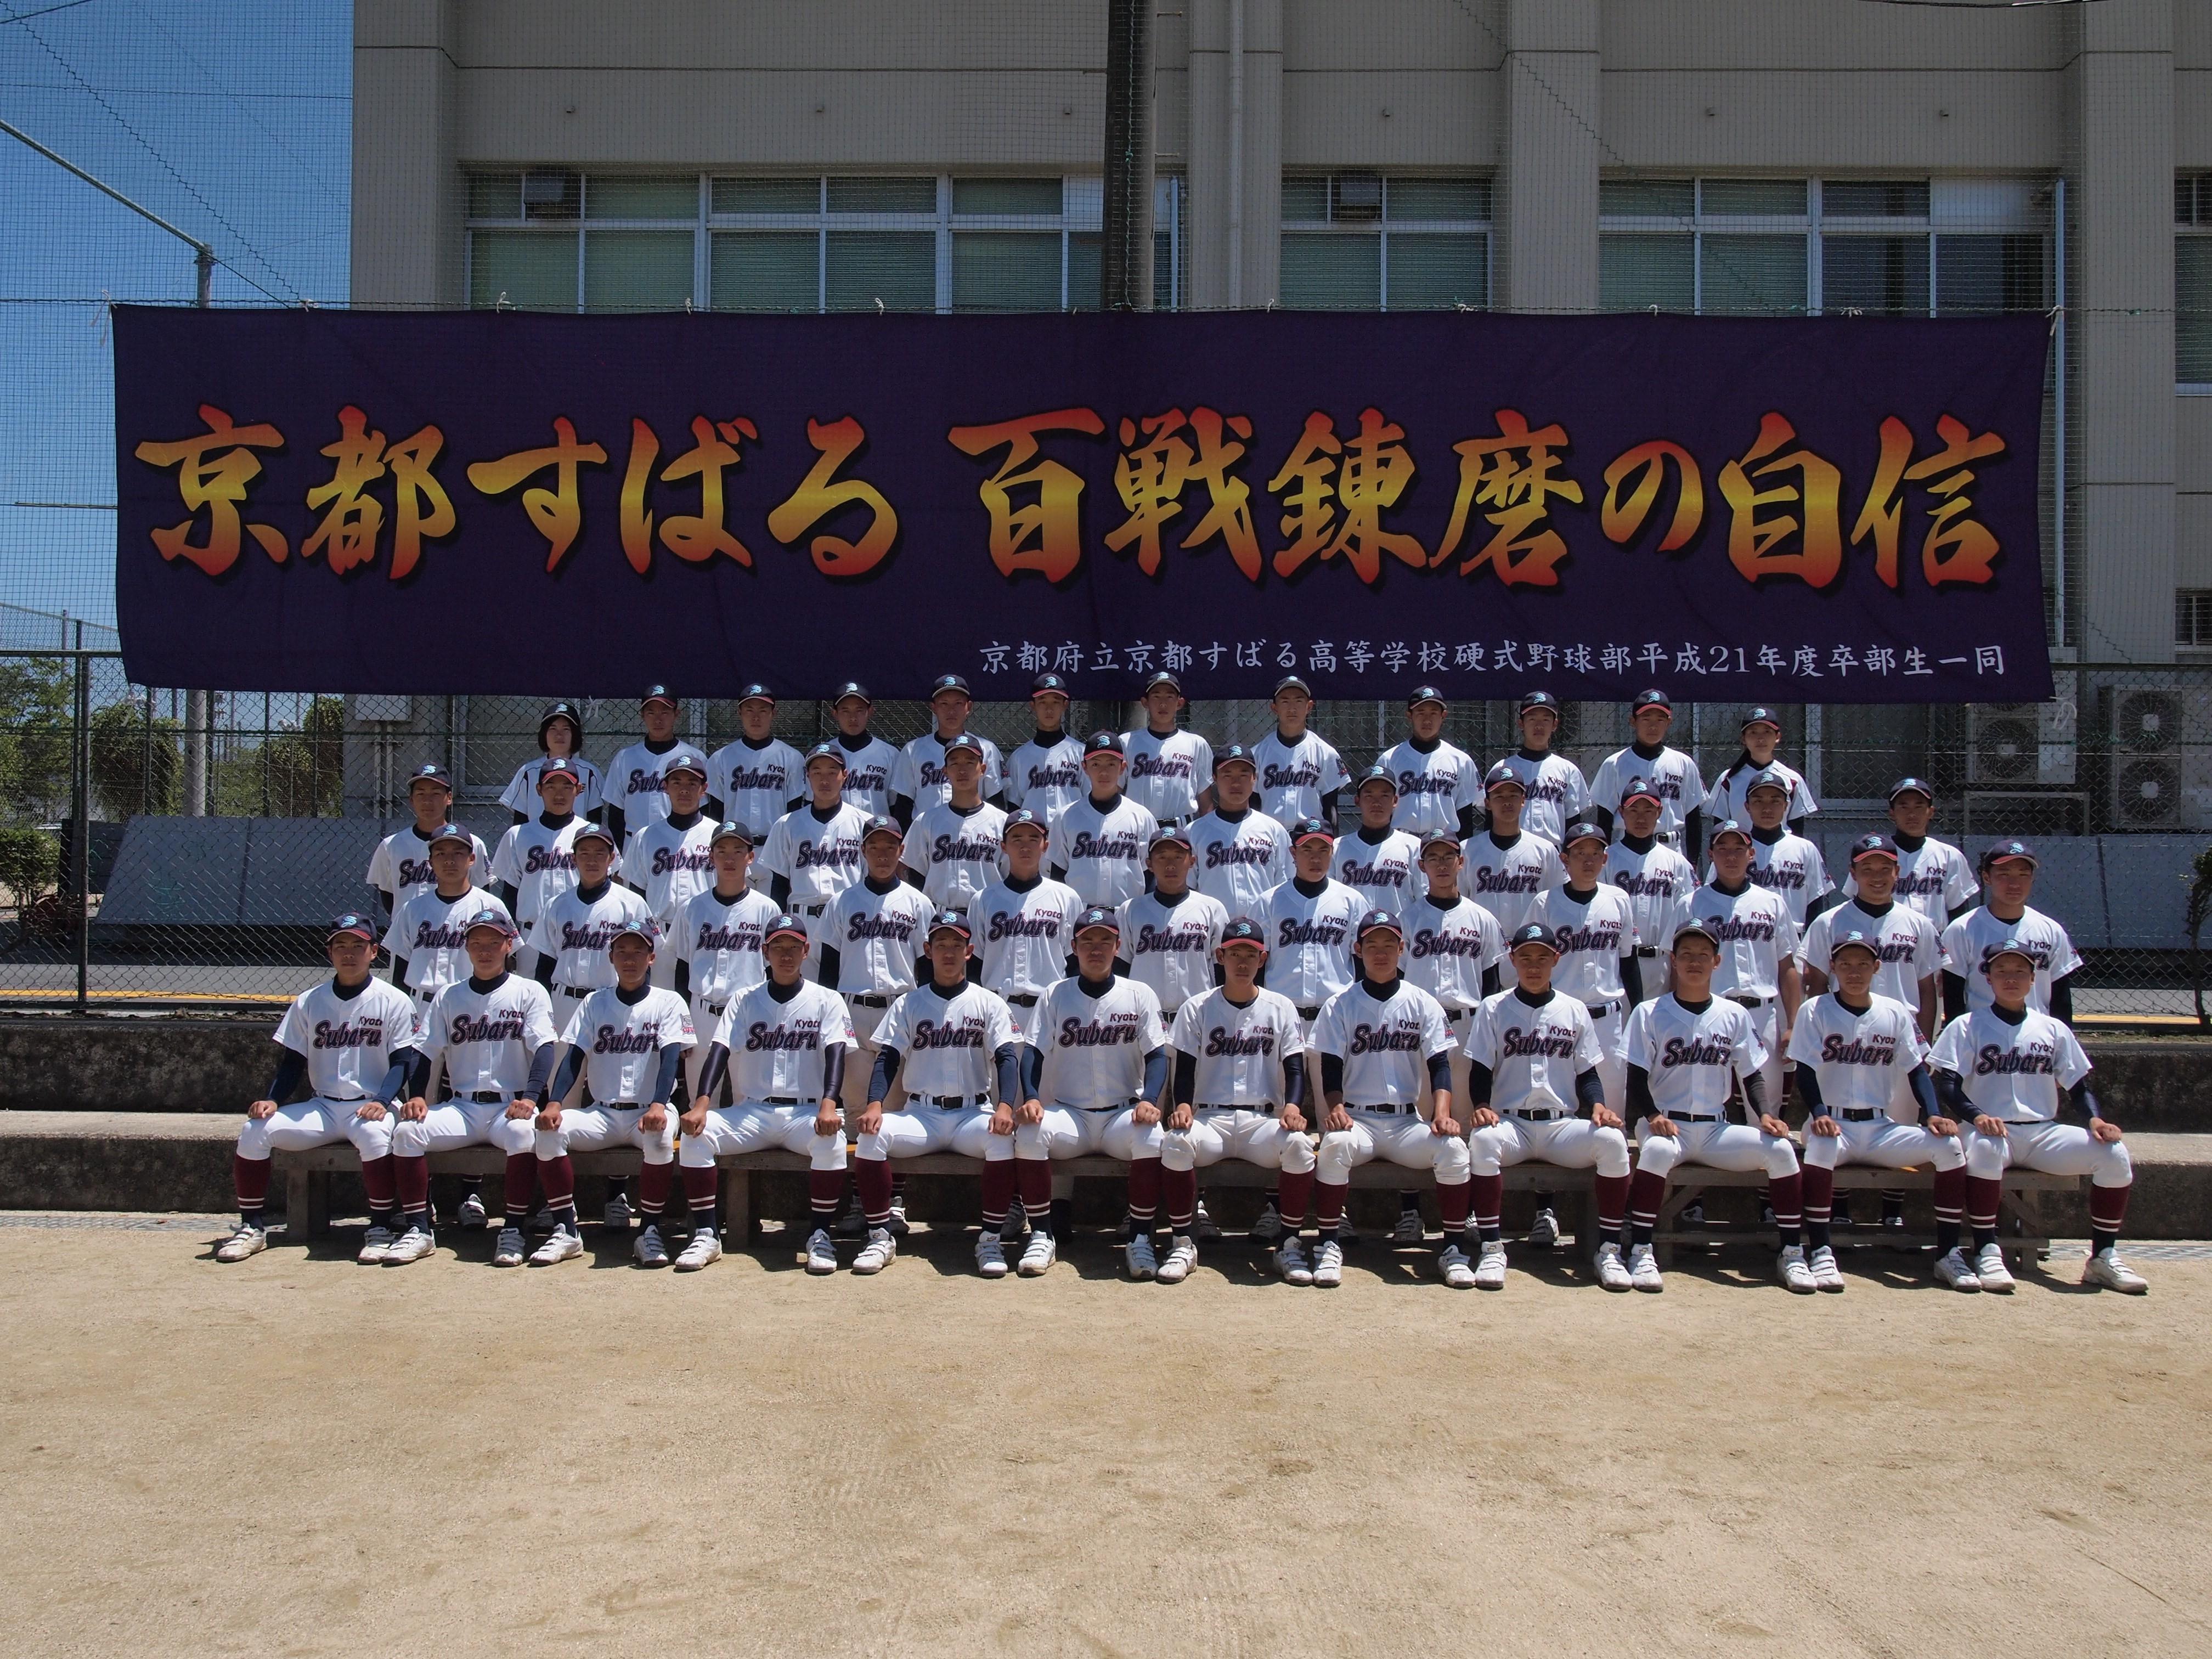 高校 野球 京都